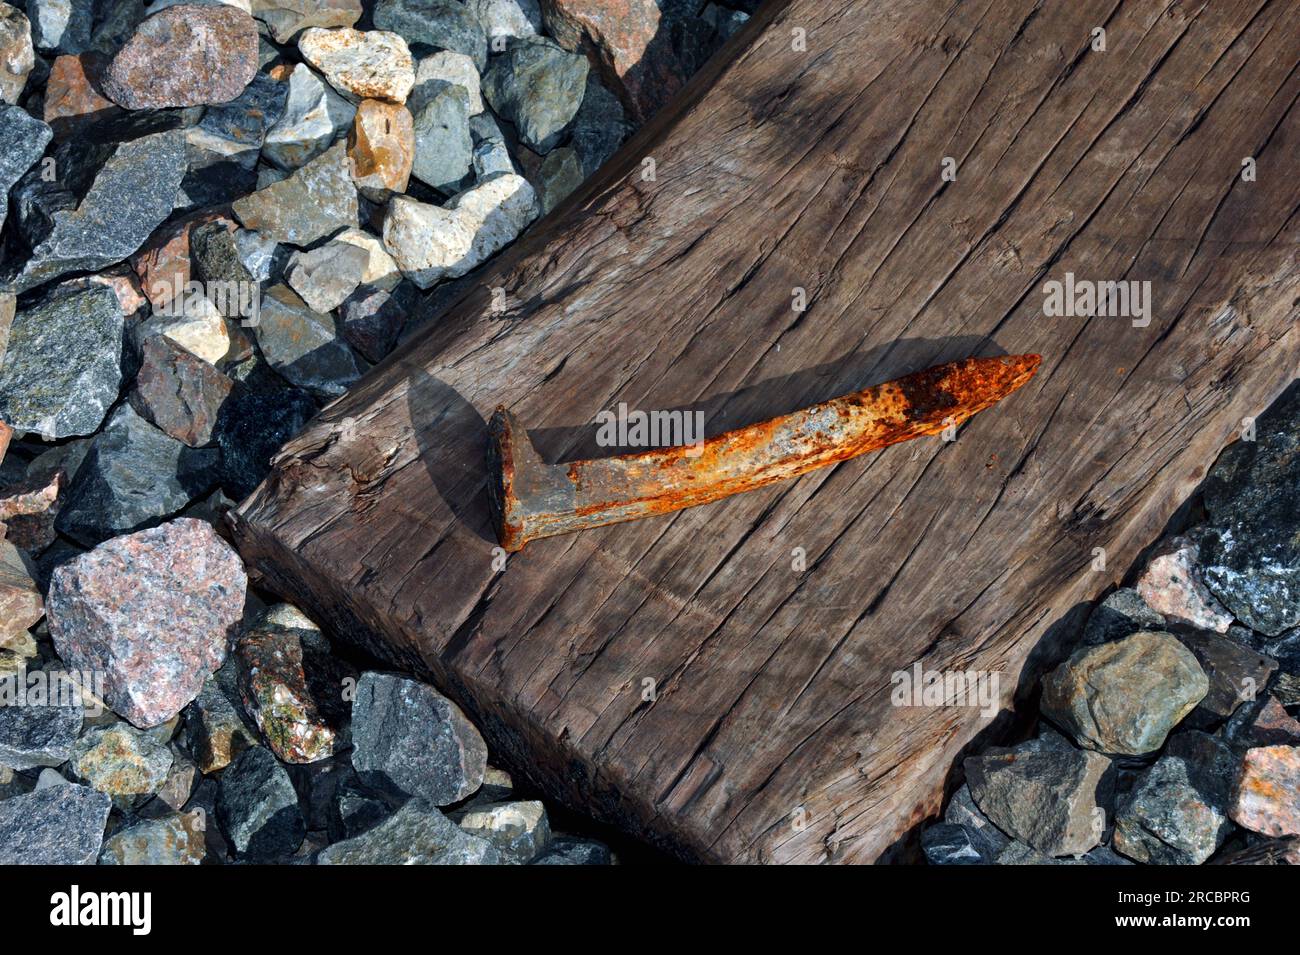 La cruz de madera se encuentra en el lecho de roca y grava. La corbata del ferrocarril tiene un pico de hierro oxidado. Foto de stock